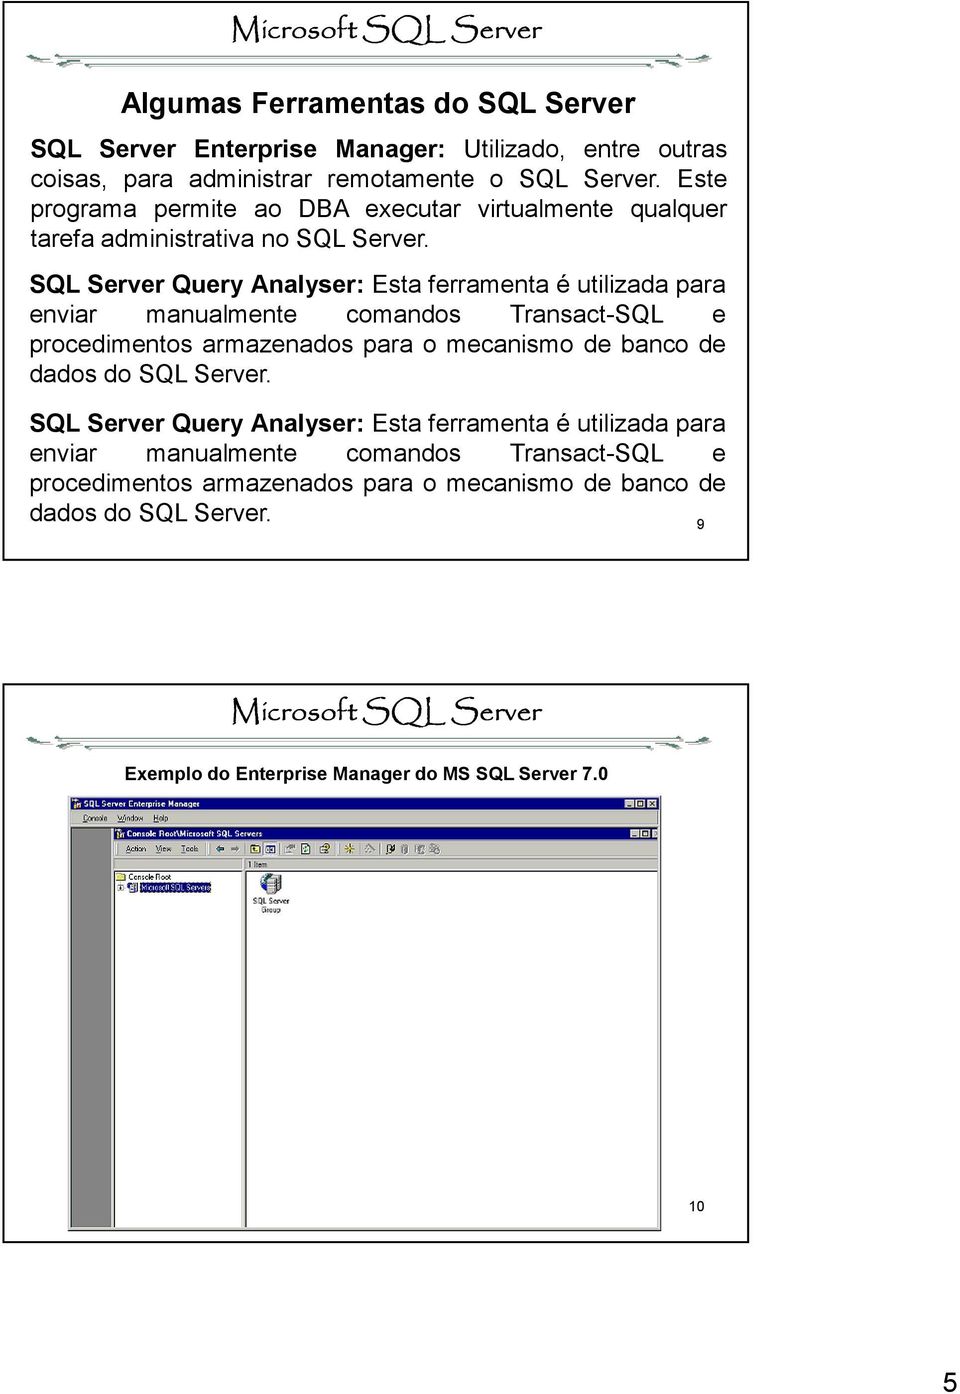 SQL Server Query Analyser: Esta ferramenta é utilizada para enviar manualmente comandos Transact-SQL e procedimentos armazenados para o mecanismo de banco de